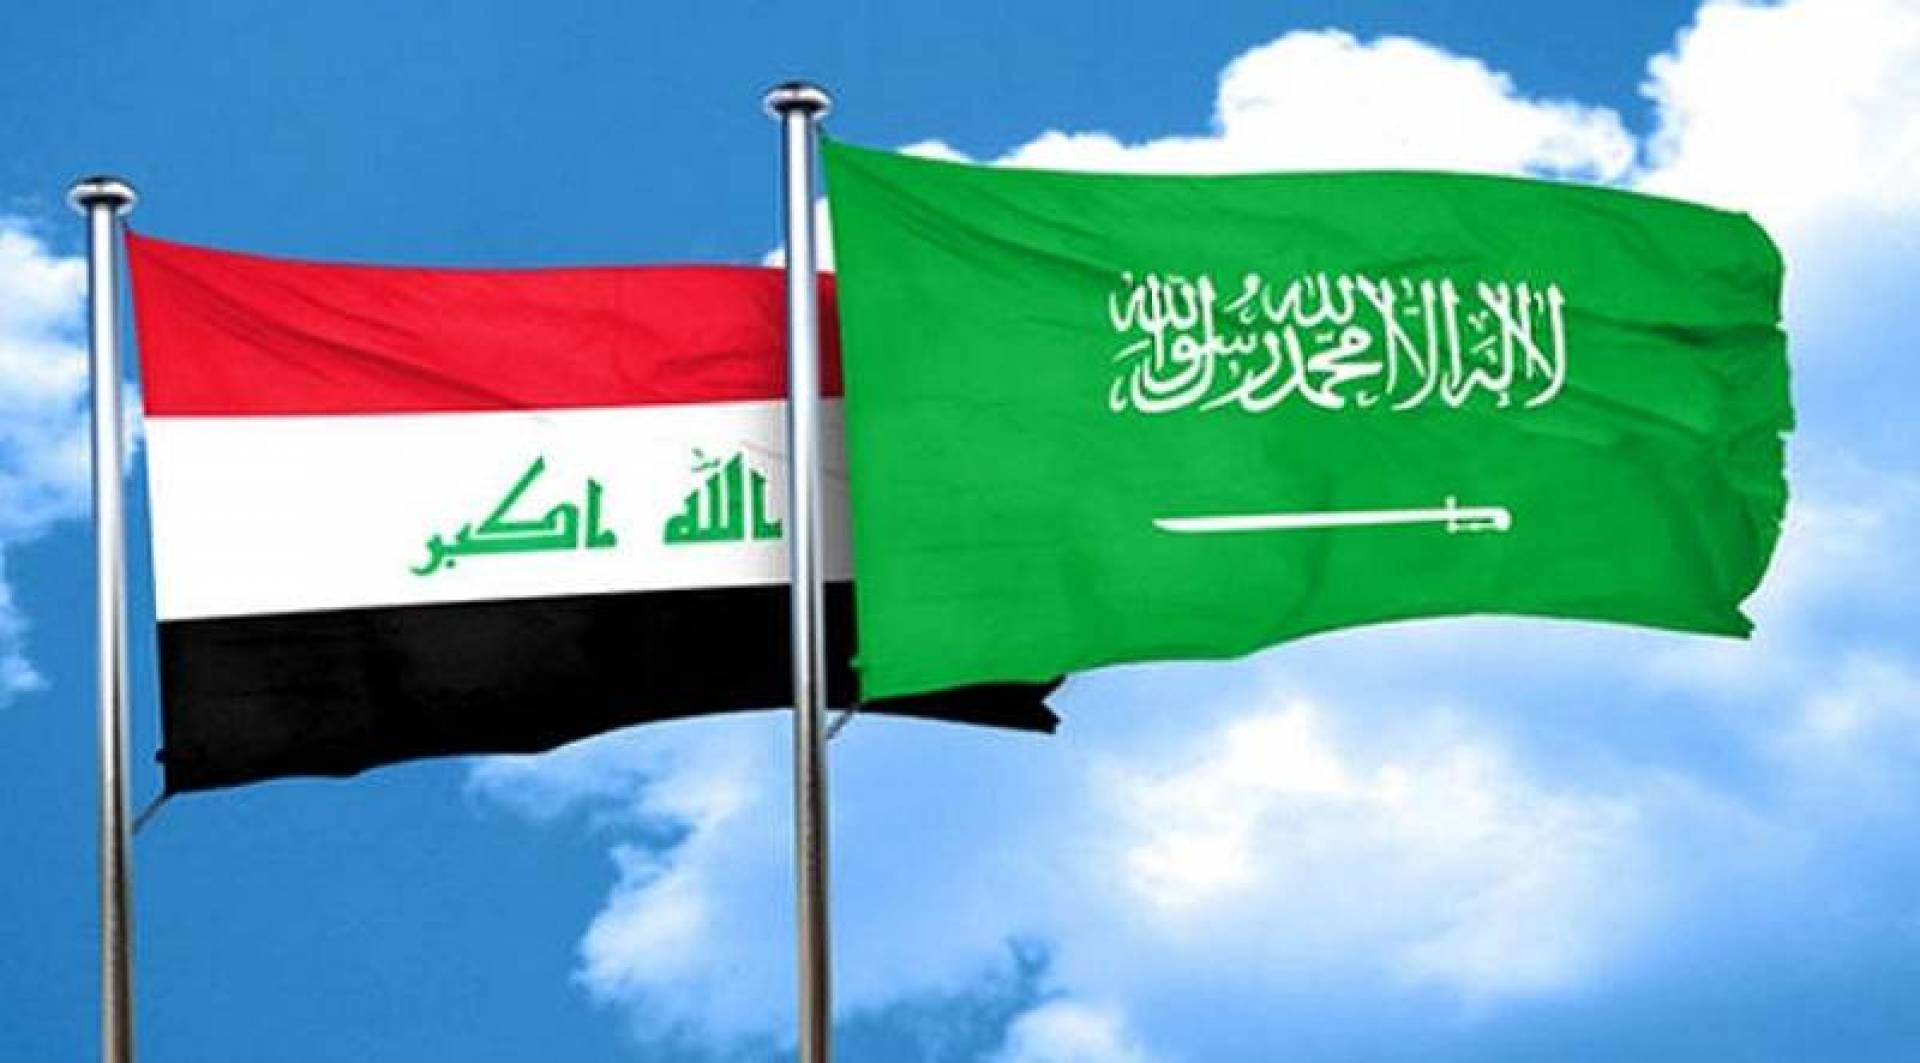 انعقاد الإجتماع الرابع للجنة السياسيَّة والأمنيَّة والعسكريَّة المُنبثقة عن مجلس التنسيق السعوديّ العراقيّ